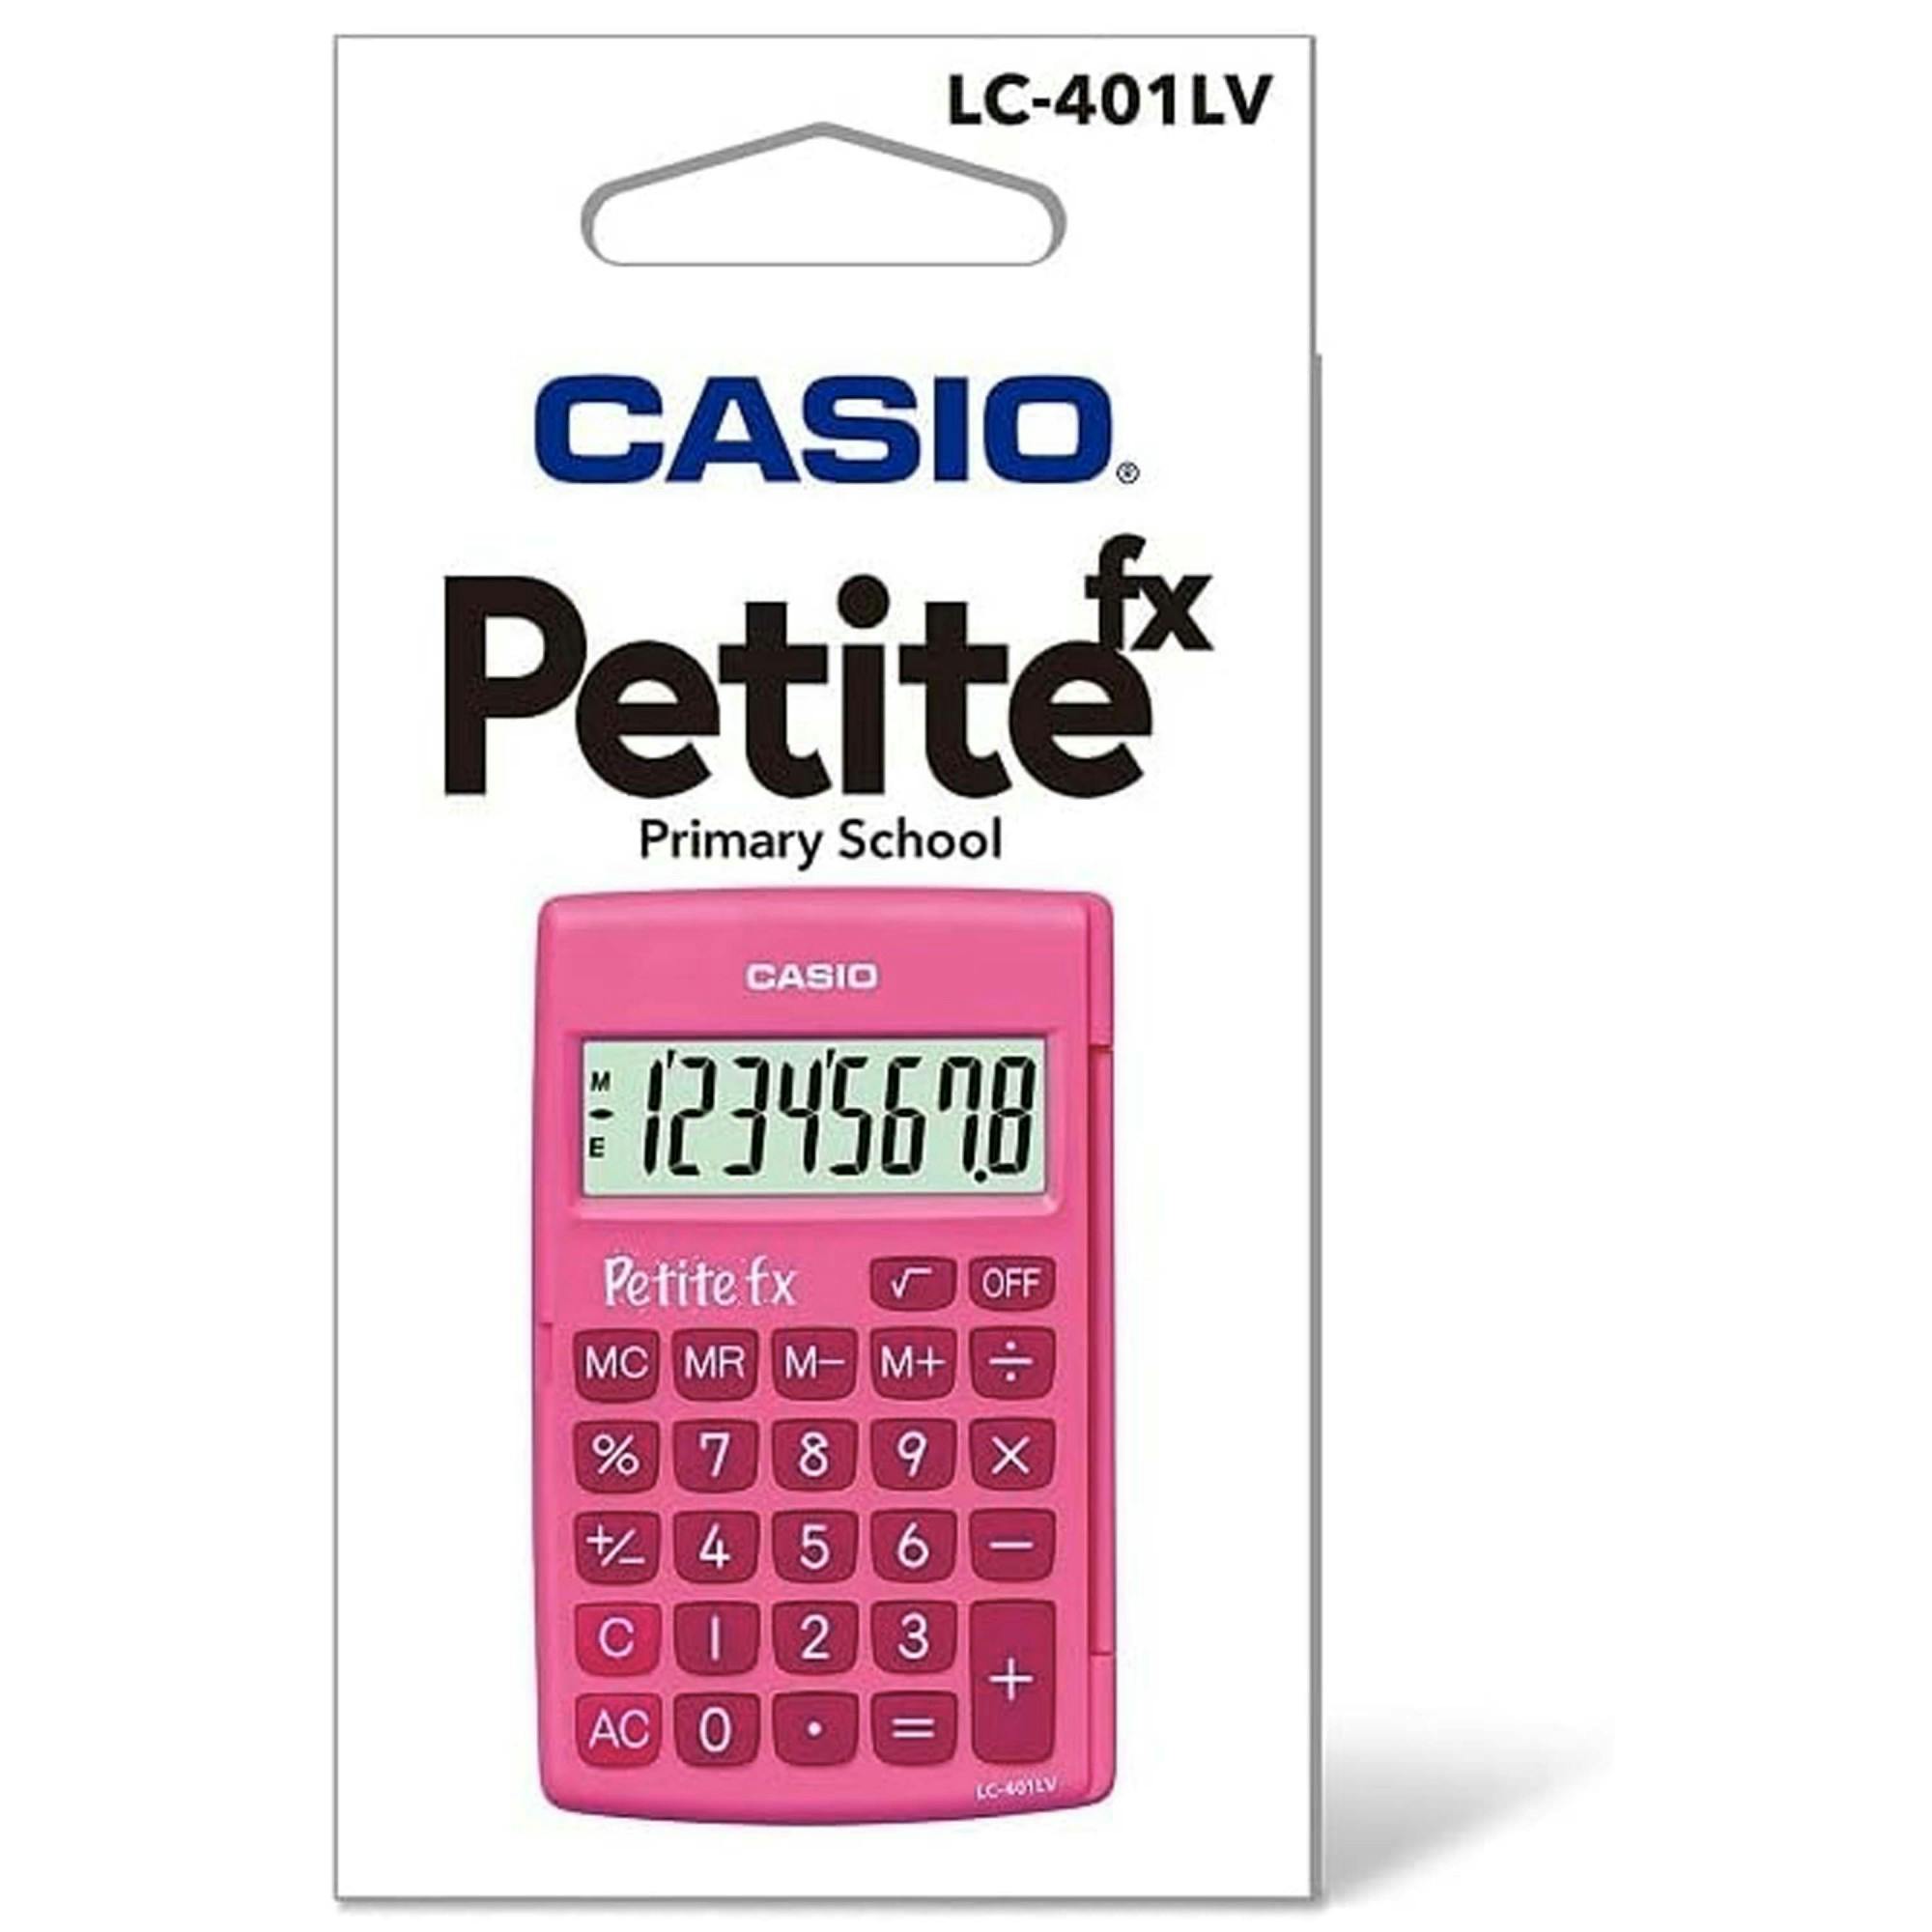 Calcolatrice Casio Rosa Con Display Ad 8 Cifre Portatile Tascabile Fucsia